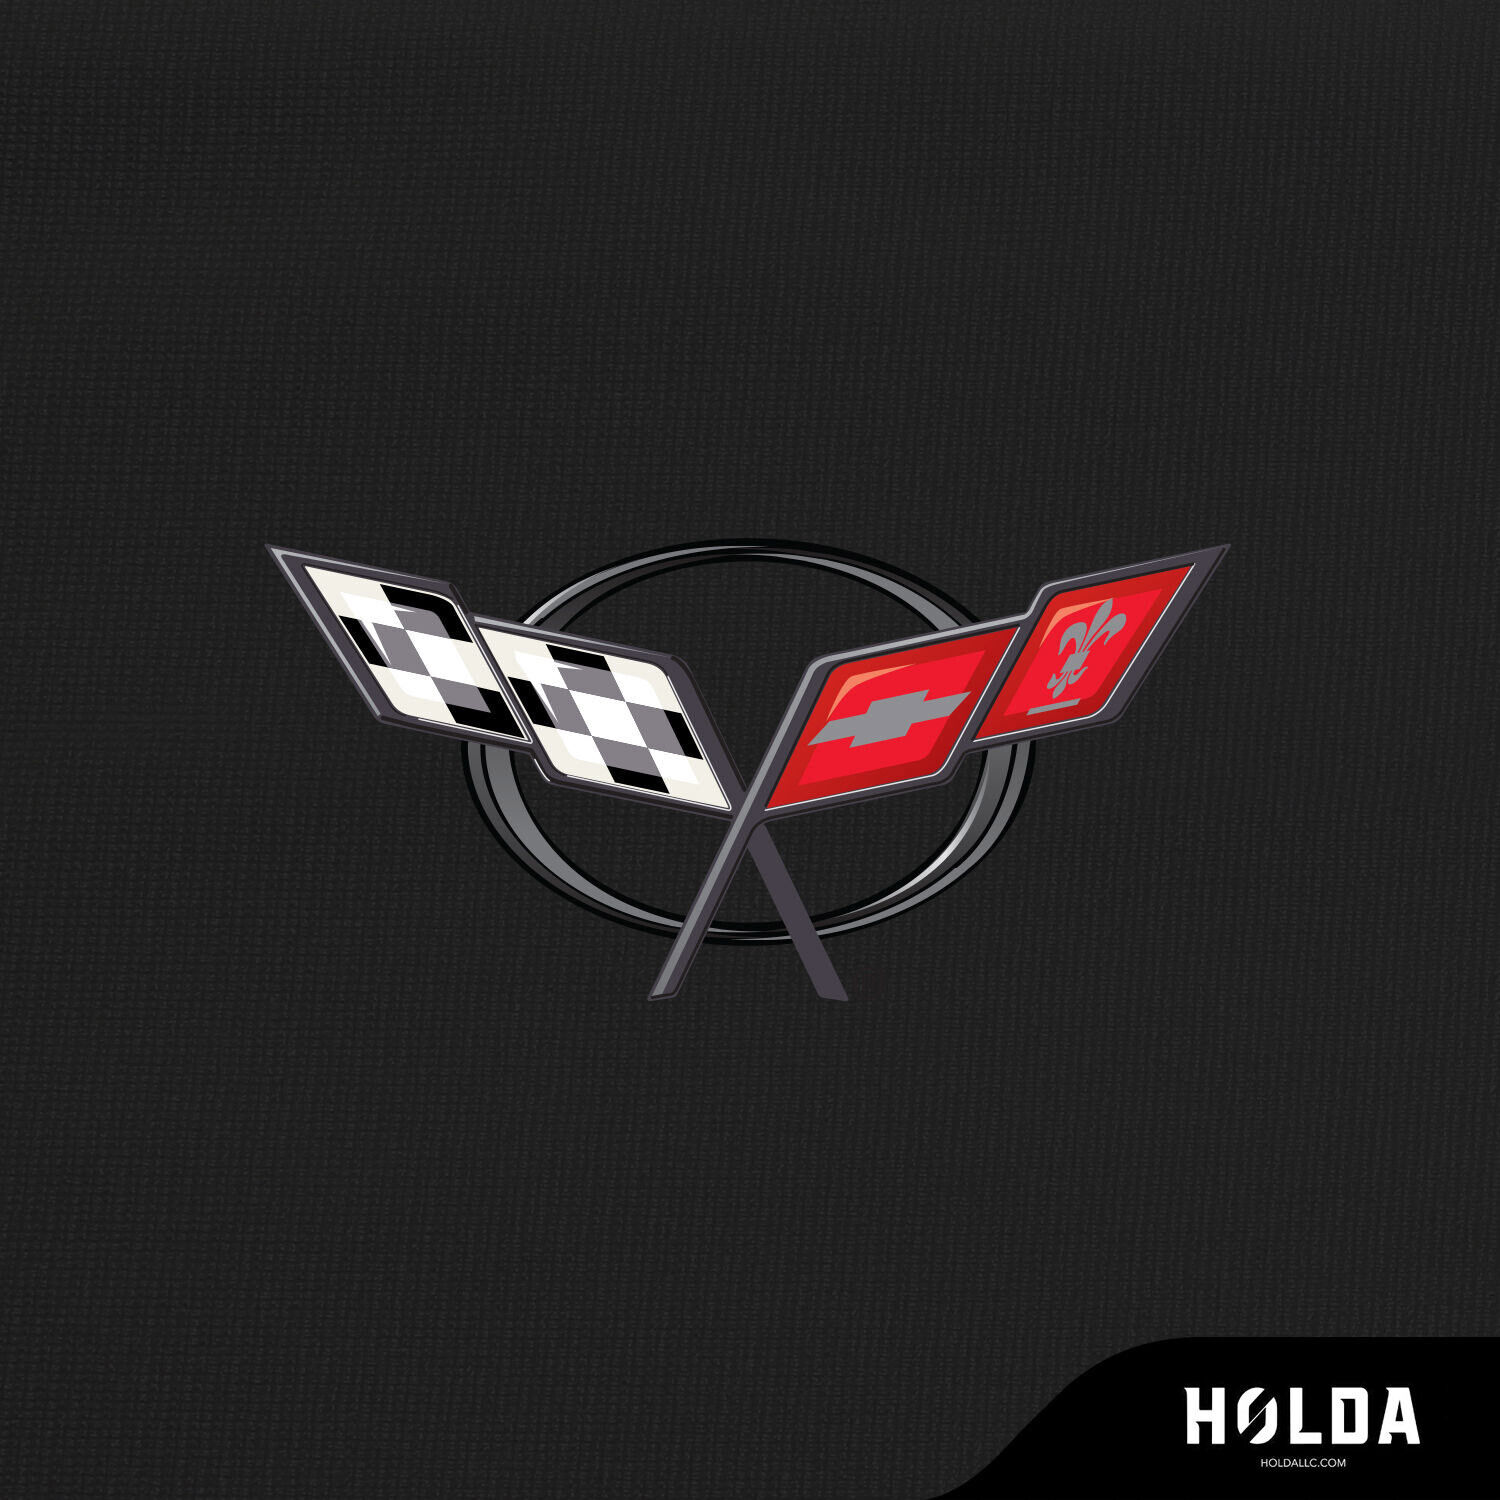 Holda - INDOOR Super Stretch Custom Car Cover for Chevy Corvette w Bag & Logo